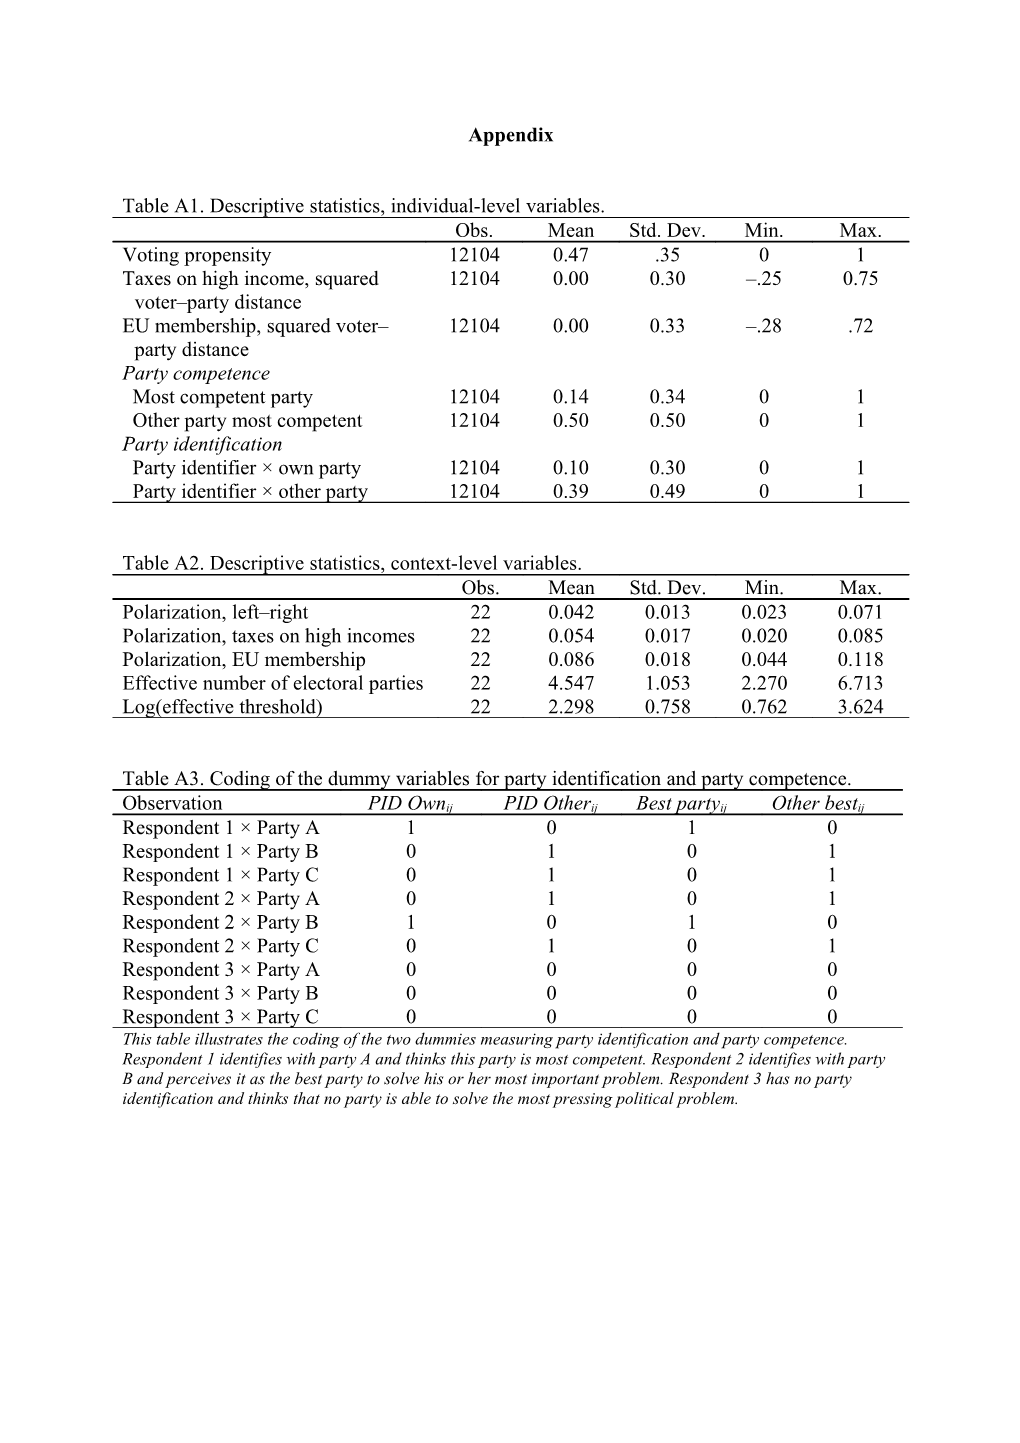 Table A1. Descriptive Statistics, Individual-Level Variables